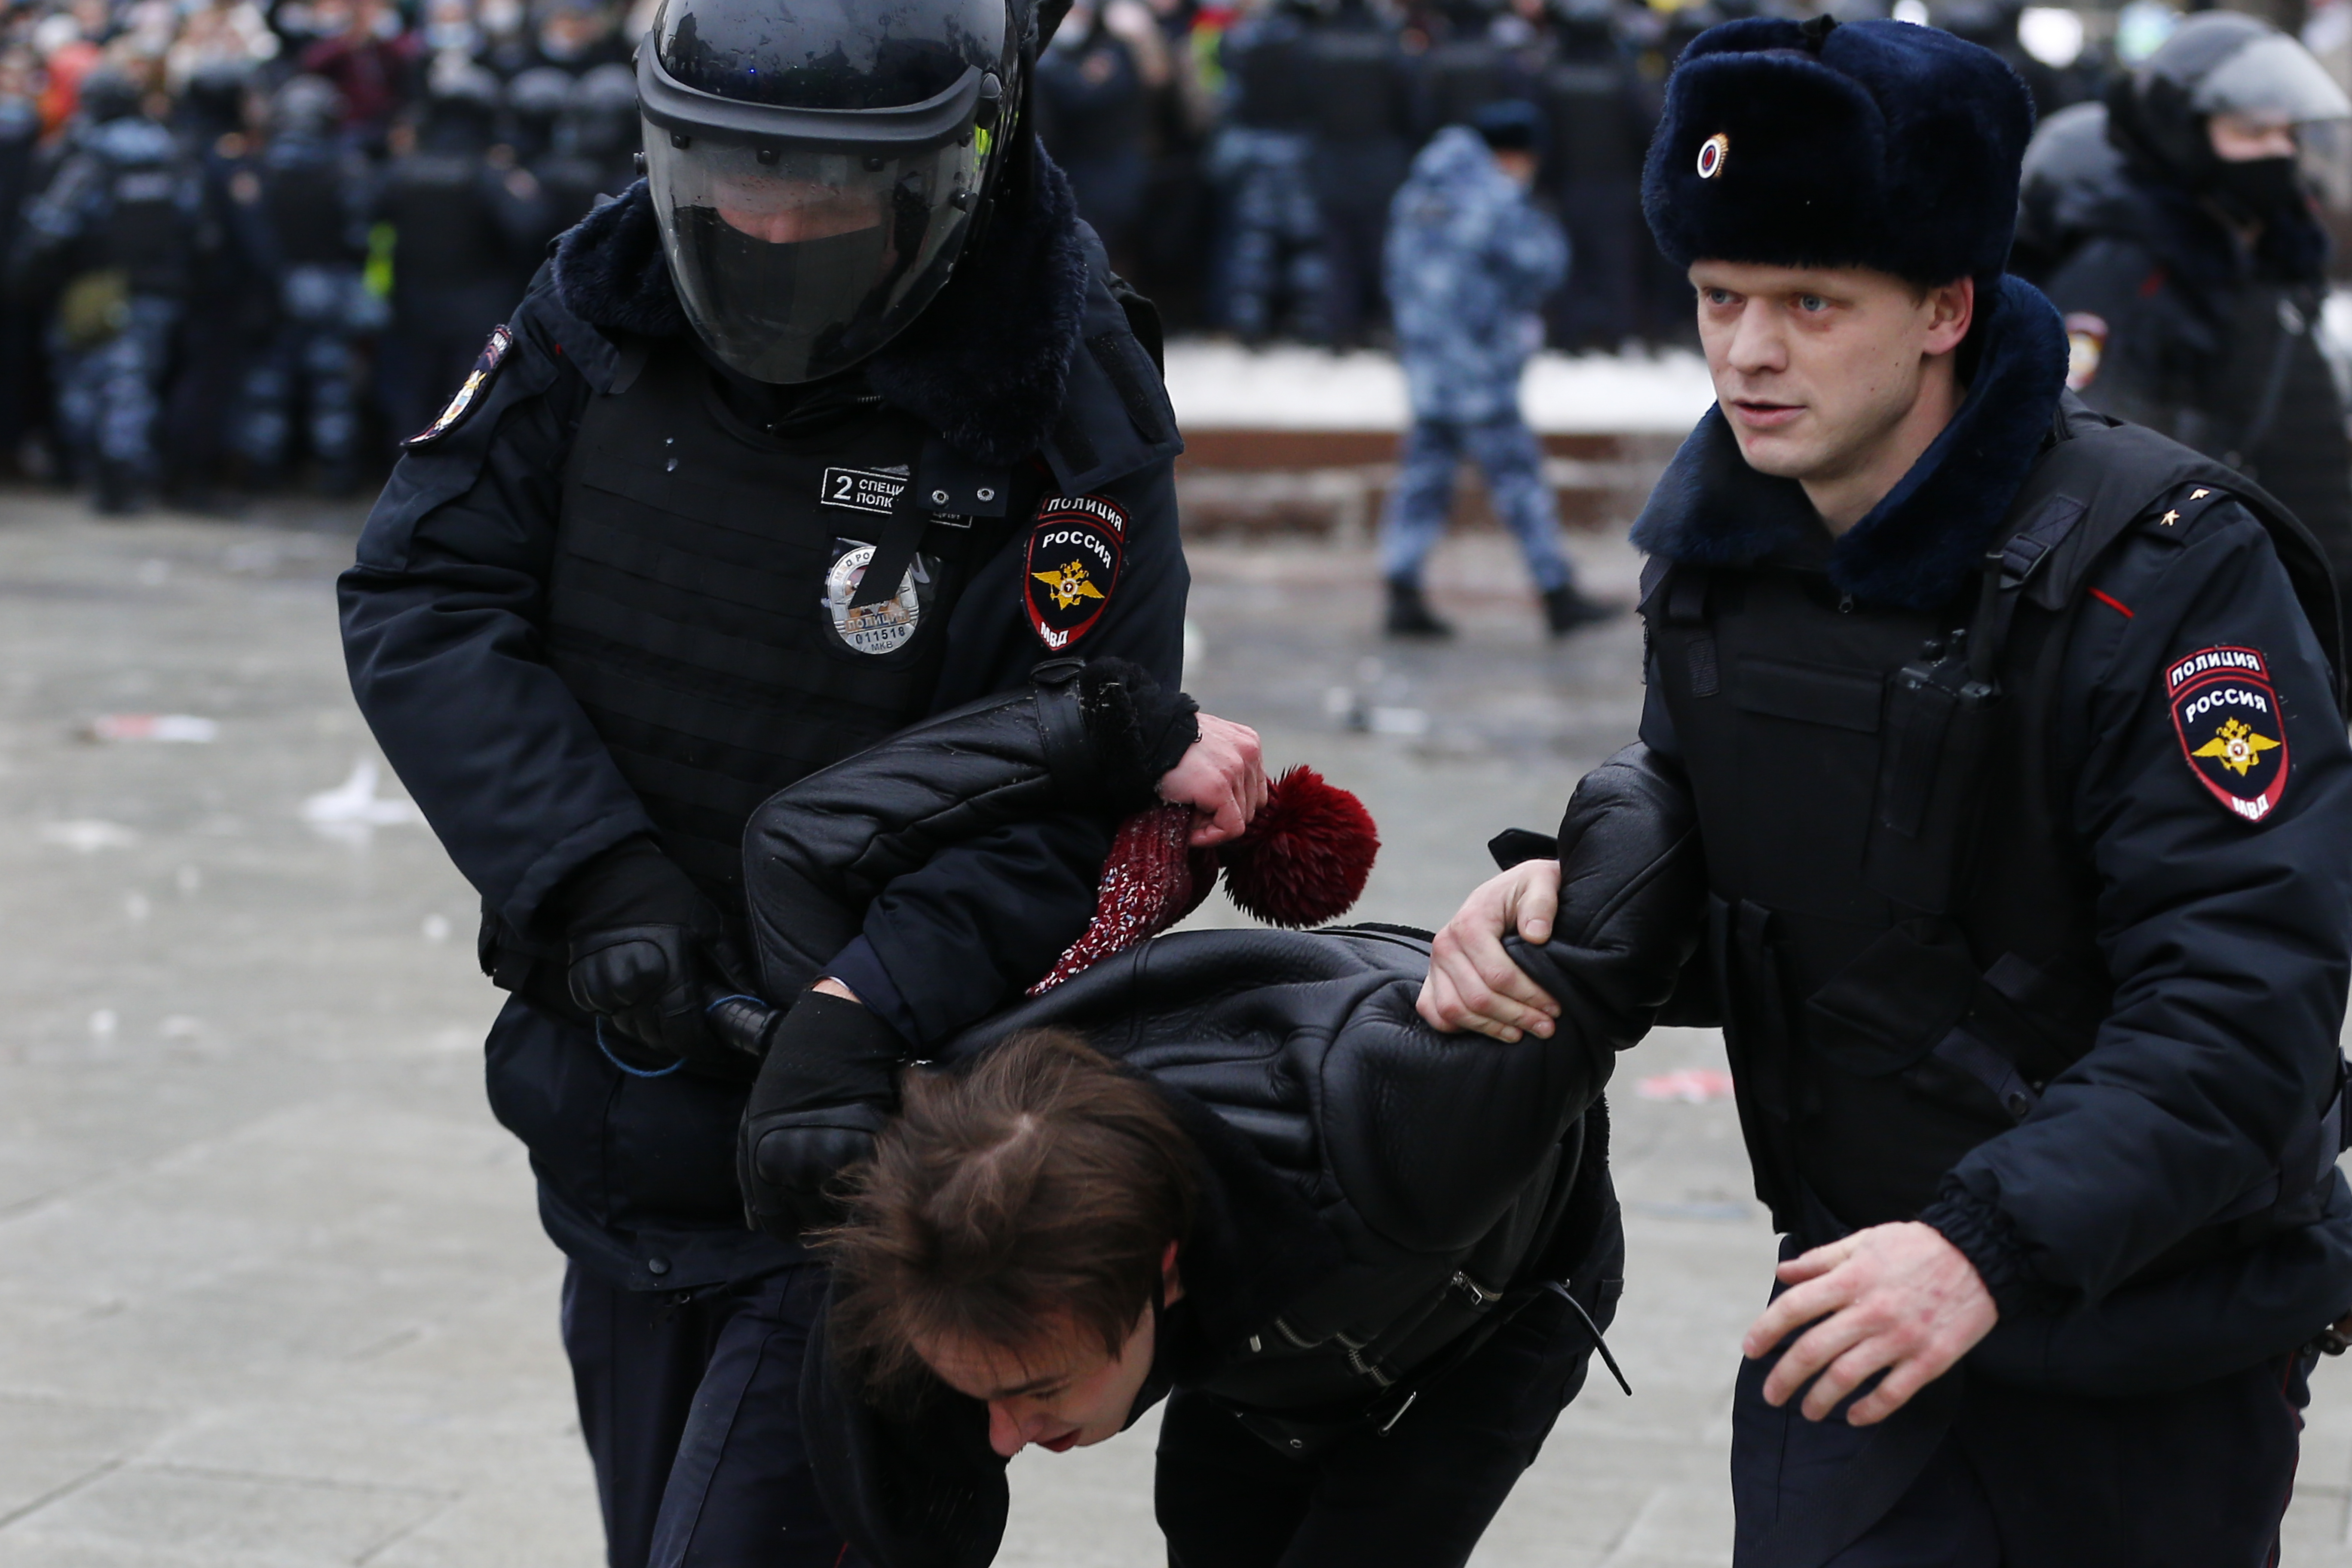 „Ha csak a kvótához kell, engem vigyen el inkább” – mondta az orosz férfi a rendőrnek, aki épp egy tüntető nőt akart őrizetbe venni